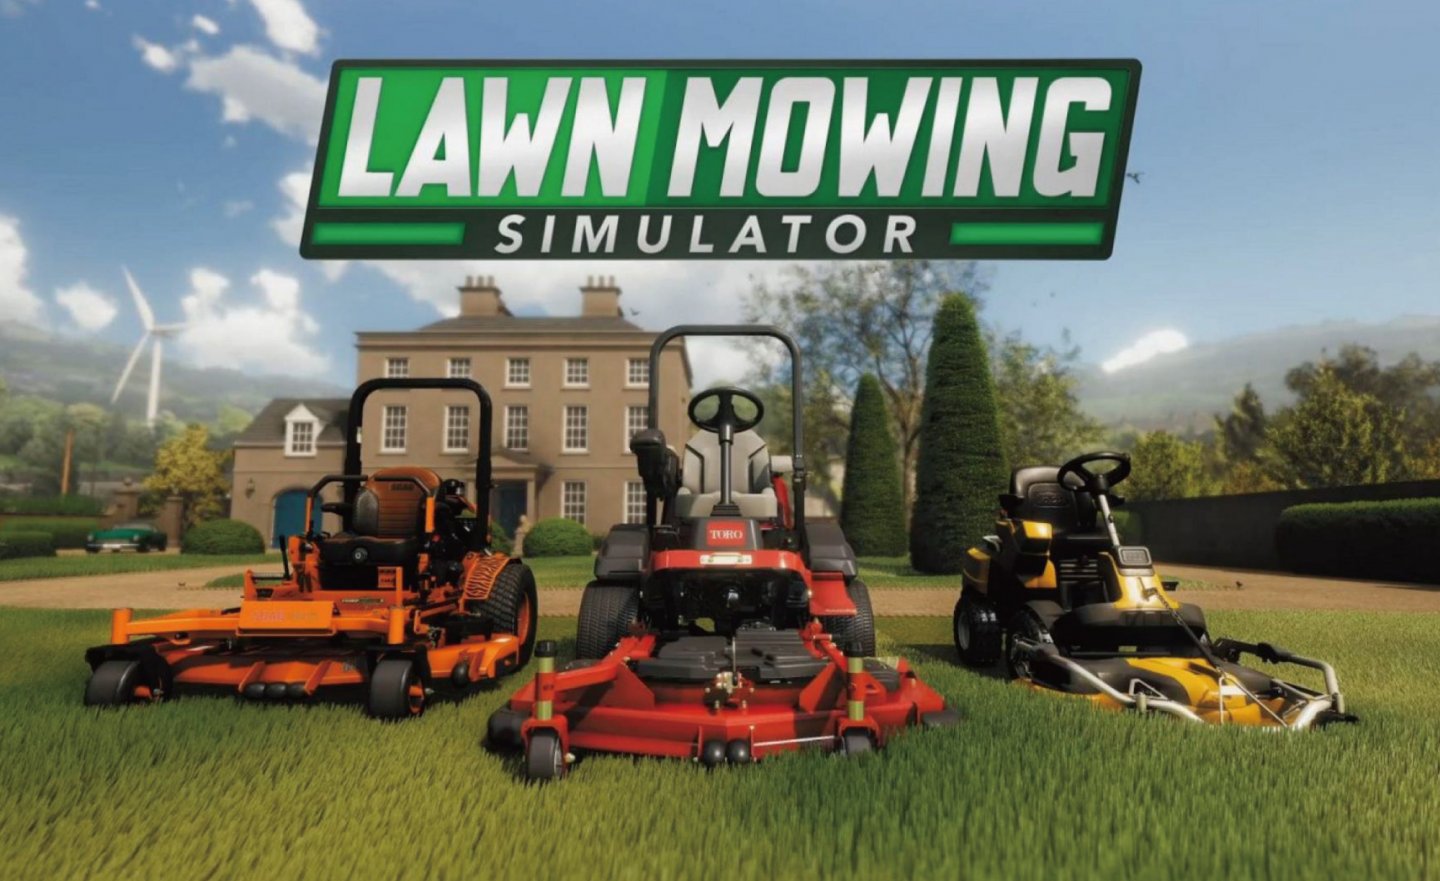 【限時免費】單人模擬遊戲《Lawn Mowing Simulator 草坪修剪模擬器》放送中，快搶在 2022 年 8 月 4 日 23:00 前領取